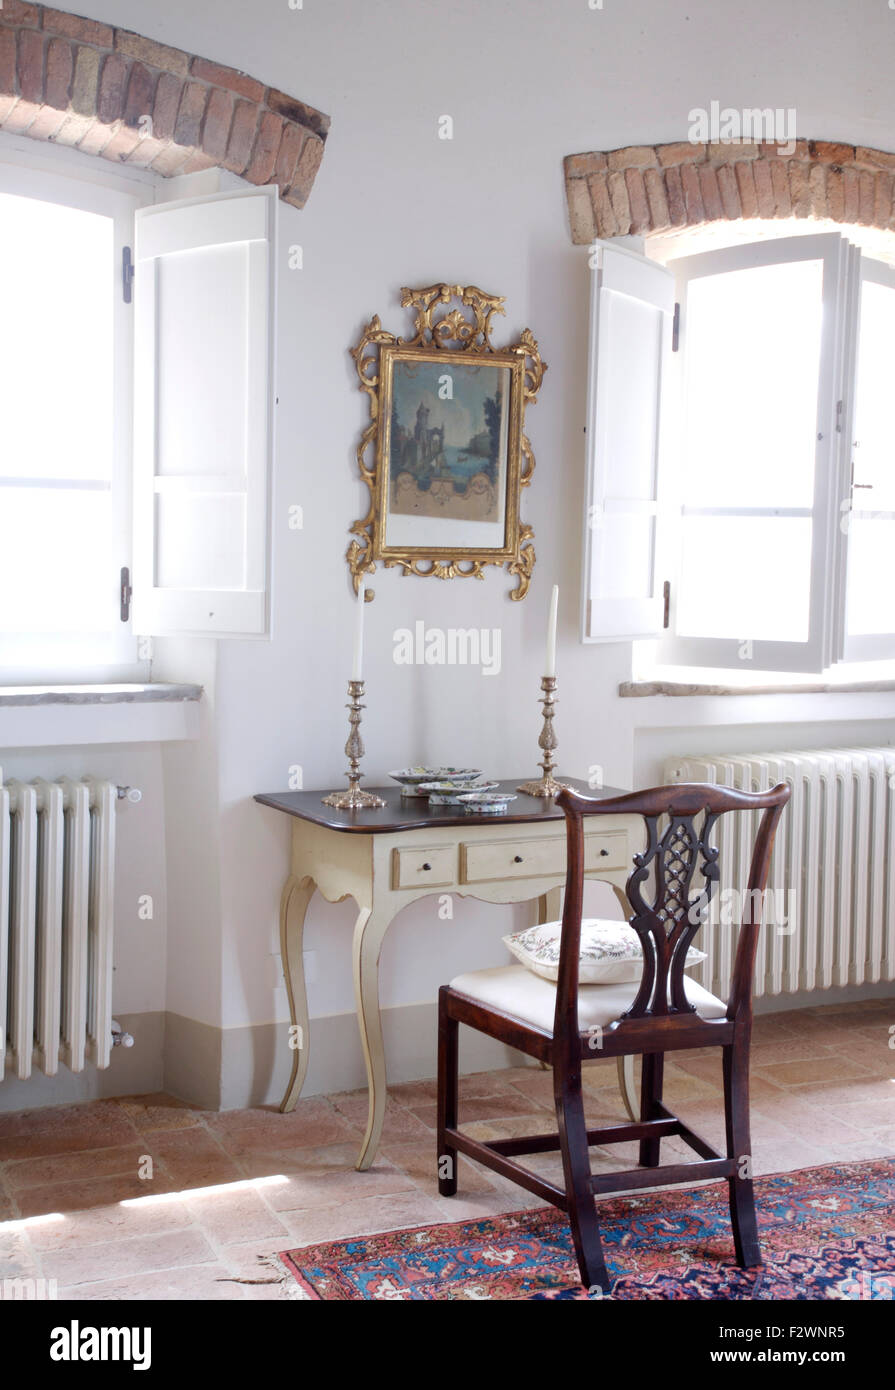 Le GILT image encadrée au-dessus de petite coiffeuse antique avec l'argent des chandeliers et chaise ancienne en italien chambres Banque D'Images